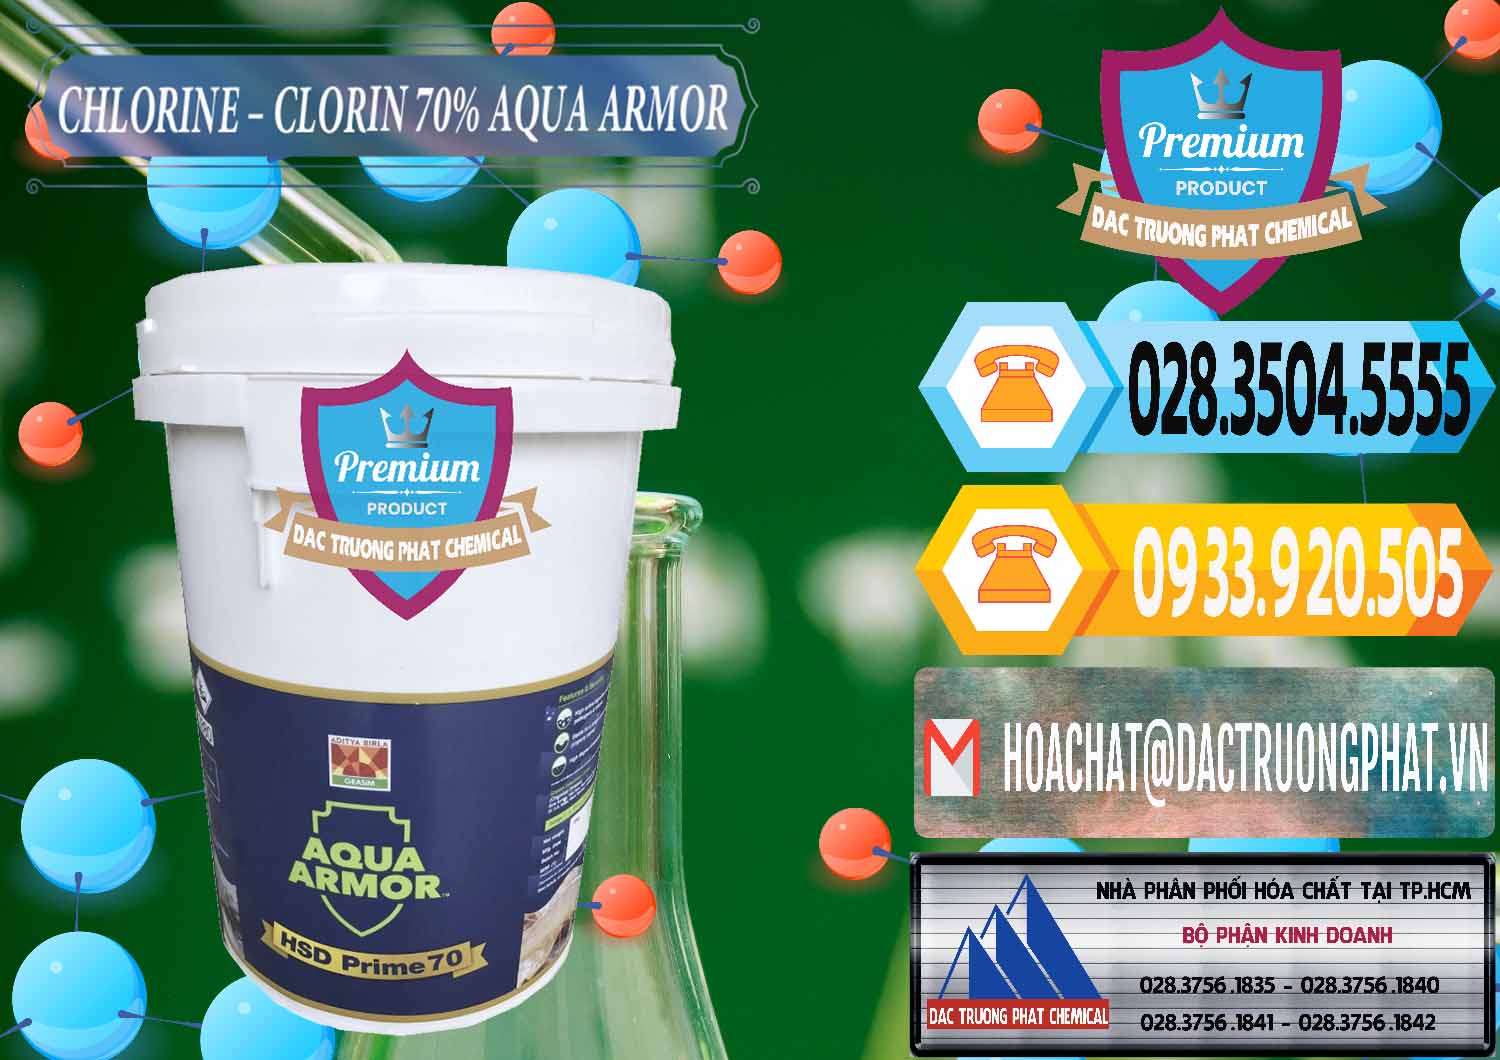 Nơi cung cấp & bán Chlorine – Clorin 70% Aqua Armor Aditya Birla Grasim Ấn Độ India - 0241 - Cty chuyên phân phối và nhập khẩu hóa chất tại TP.HCM - hoachattayrua.net